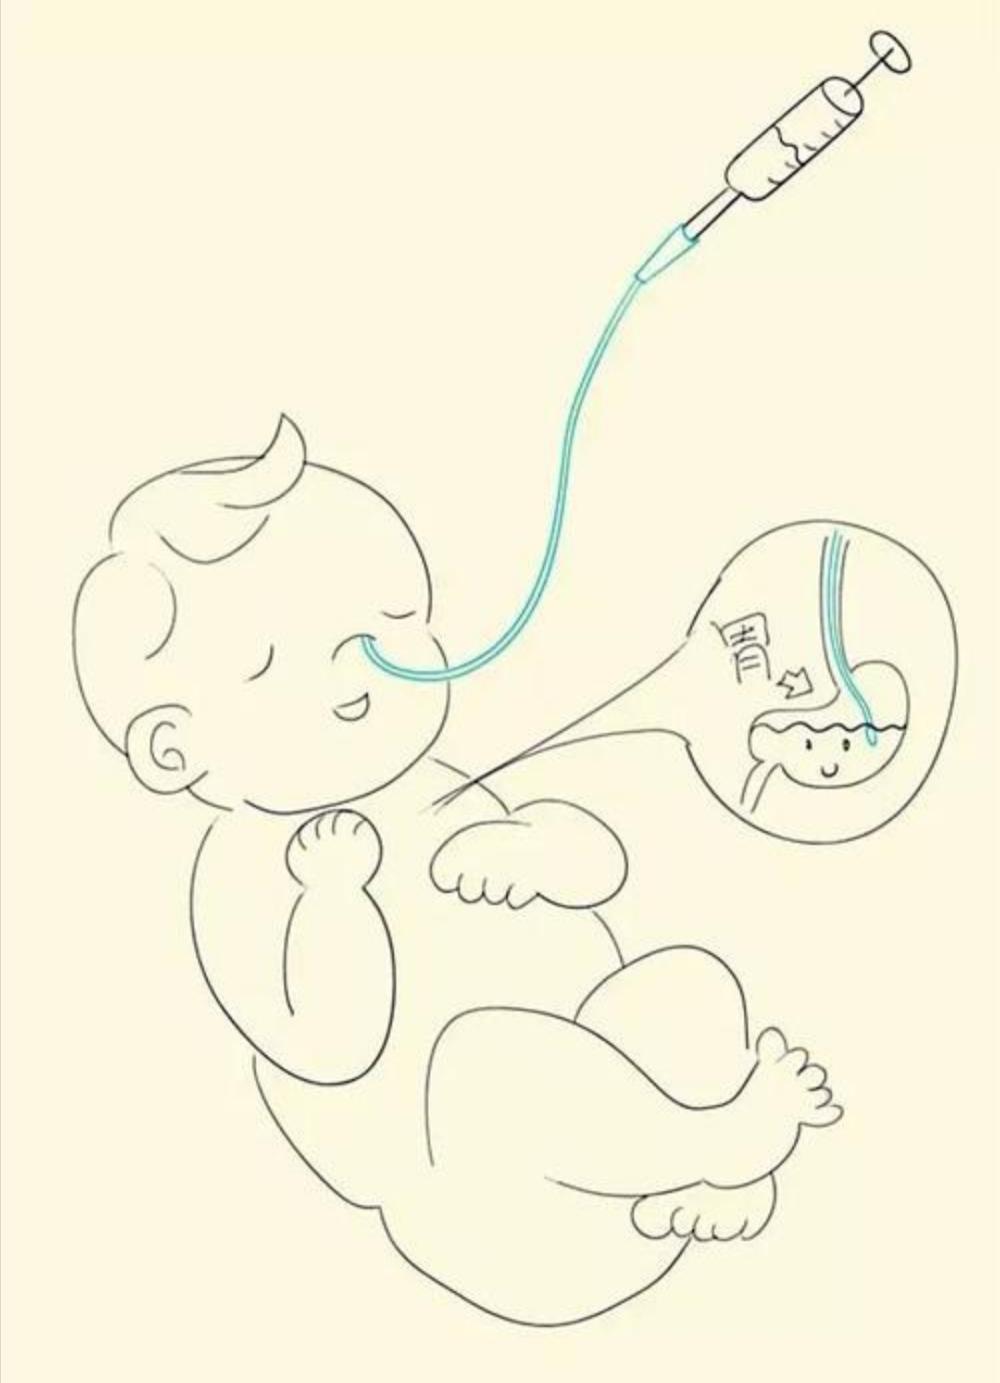 小新是个刚满月的宝宝,在特诊部住院期间,医生根据宝宝病情留置了胃管